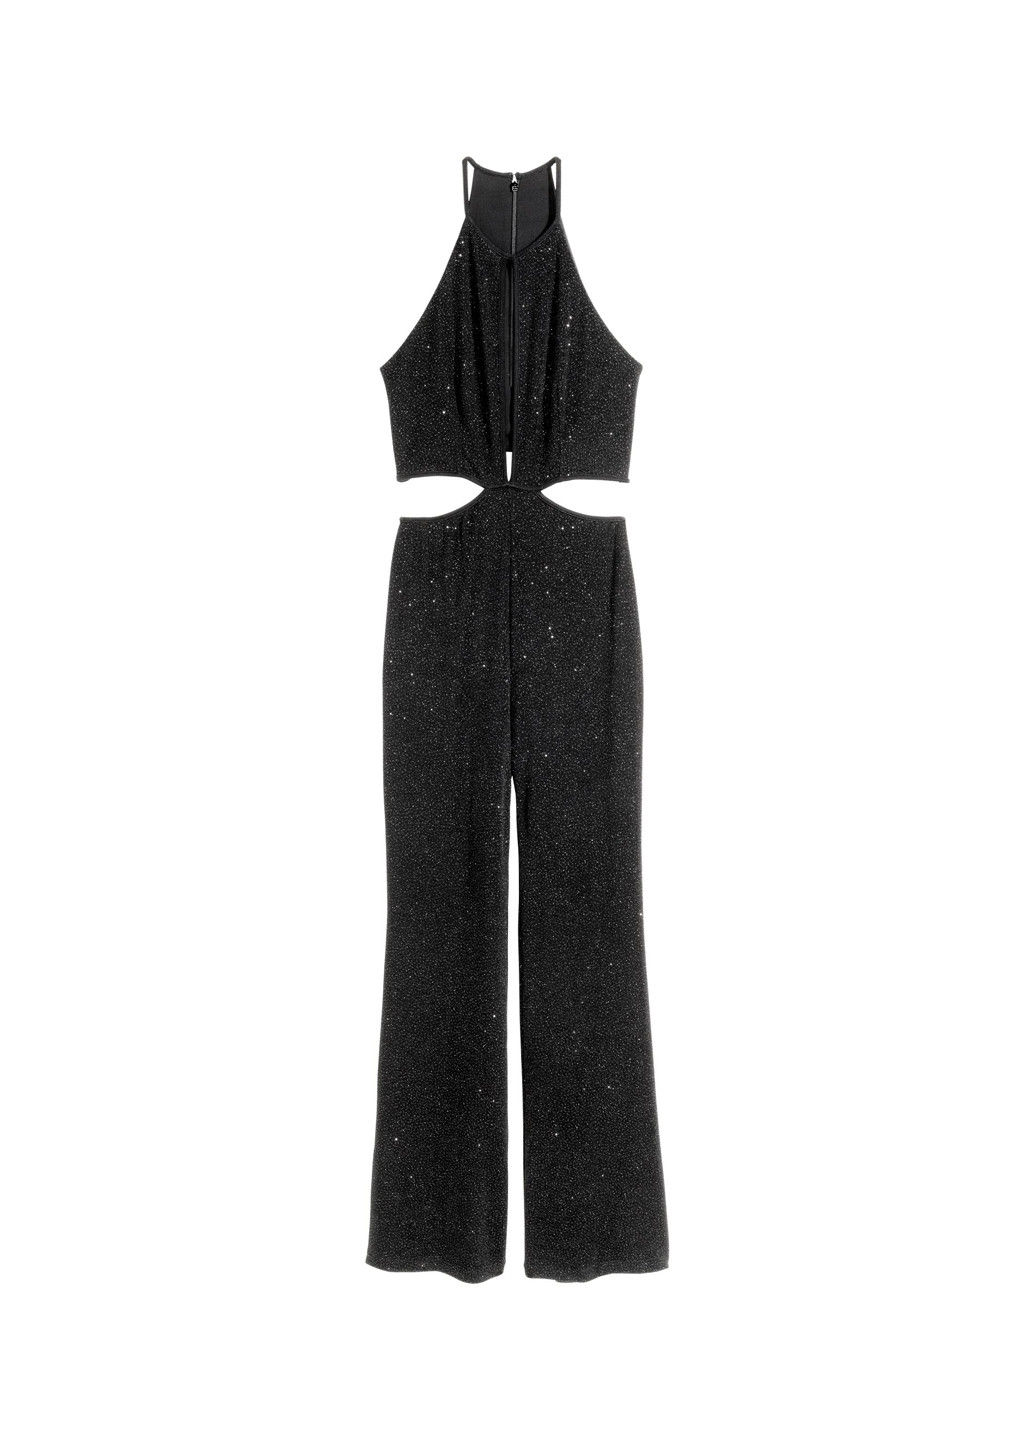 Комбинезон H&M комбинезон-брюки однотонный чёрный вечерний трикотаж, полиамид